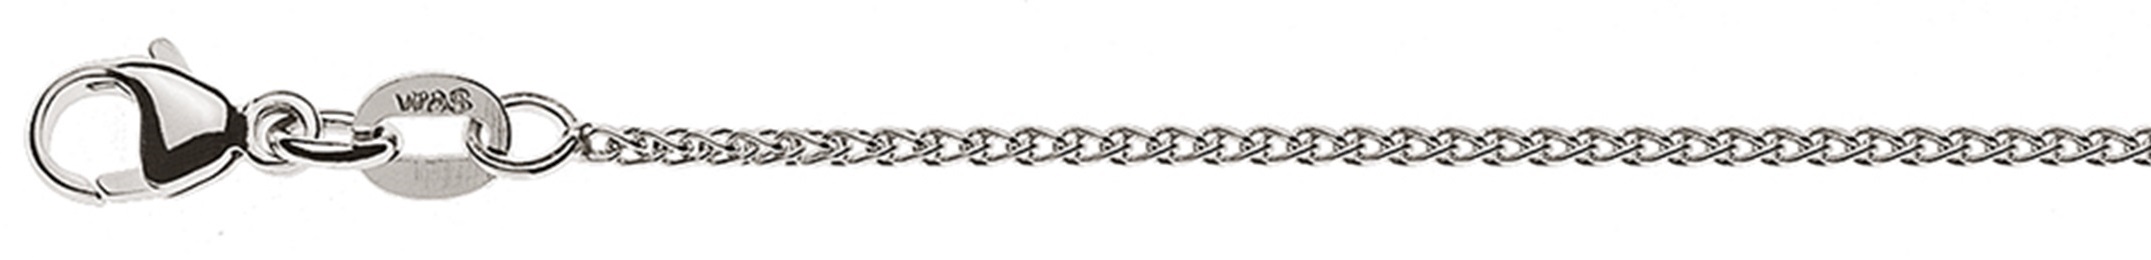 AURONOS Style Halskette Weissgold 9K Zopfkette 55cm 1.2mm